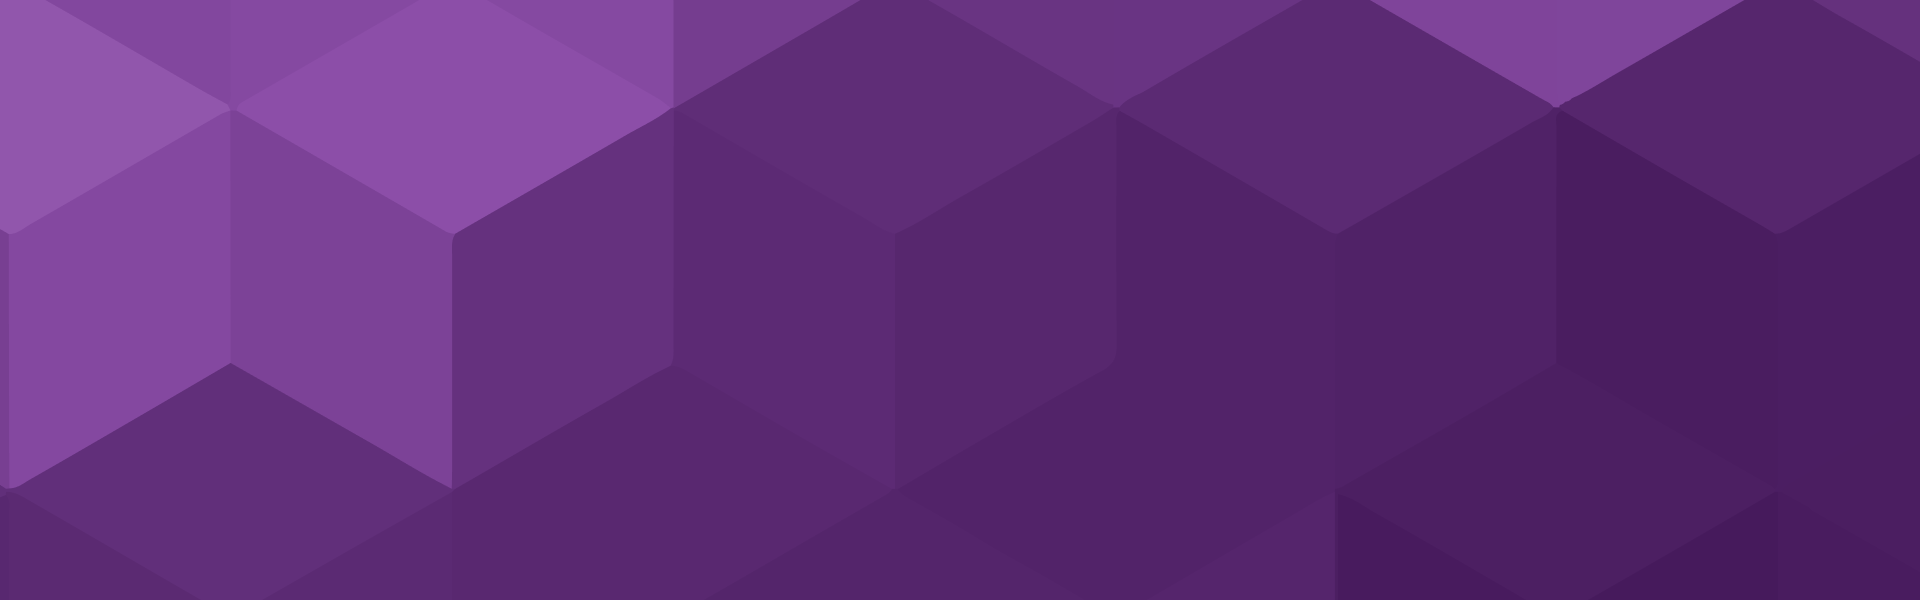 紫の六角形パターンの背景